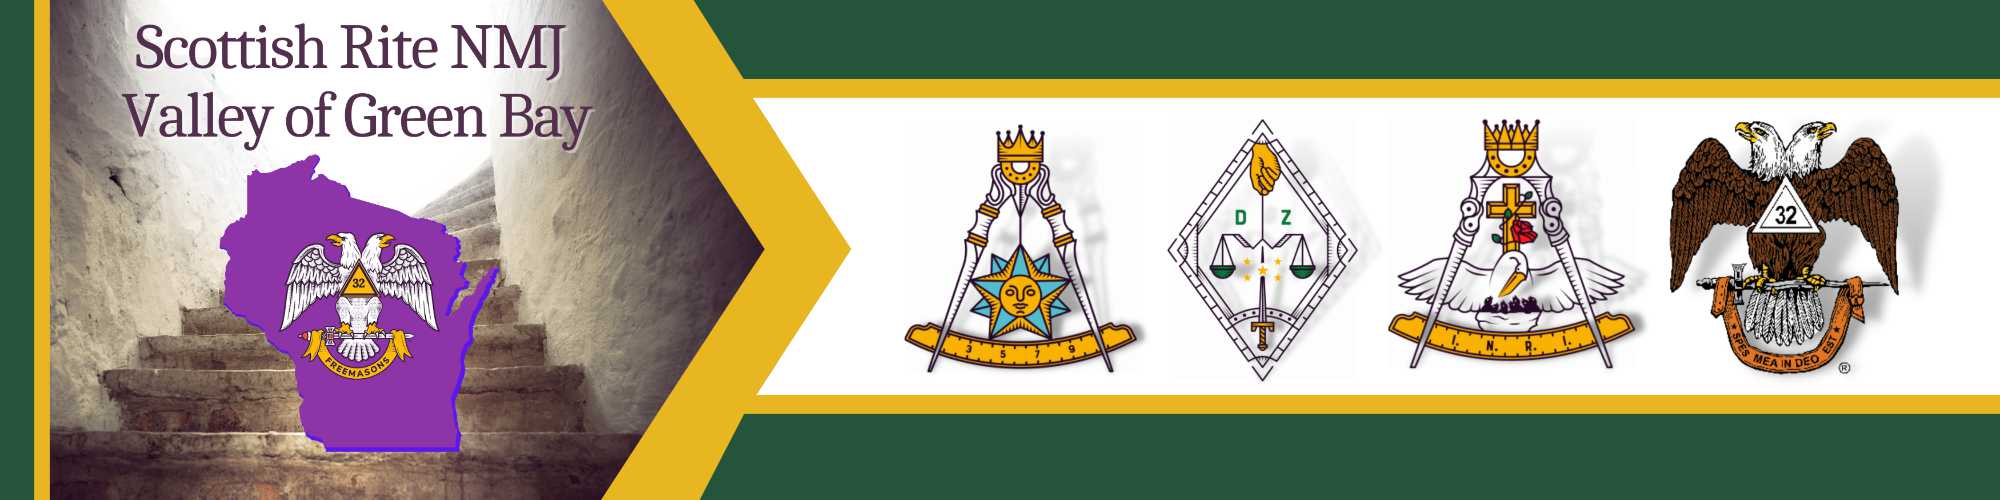 Scottish Rite Banner Image with logos